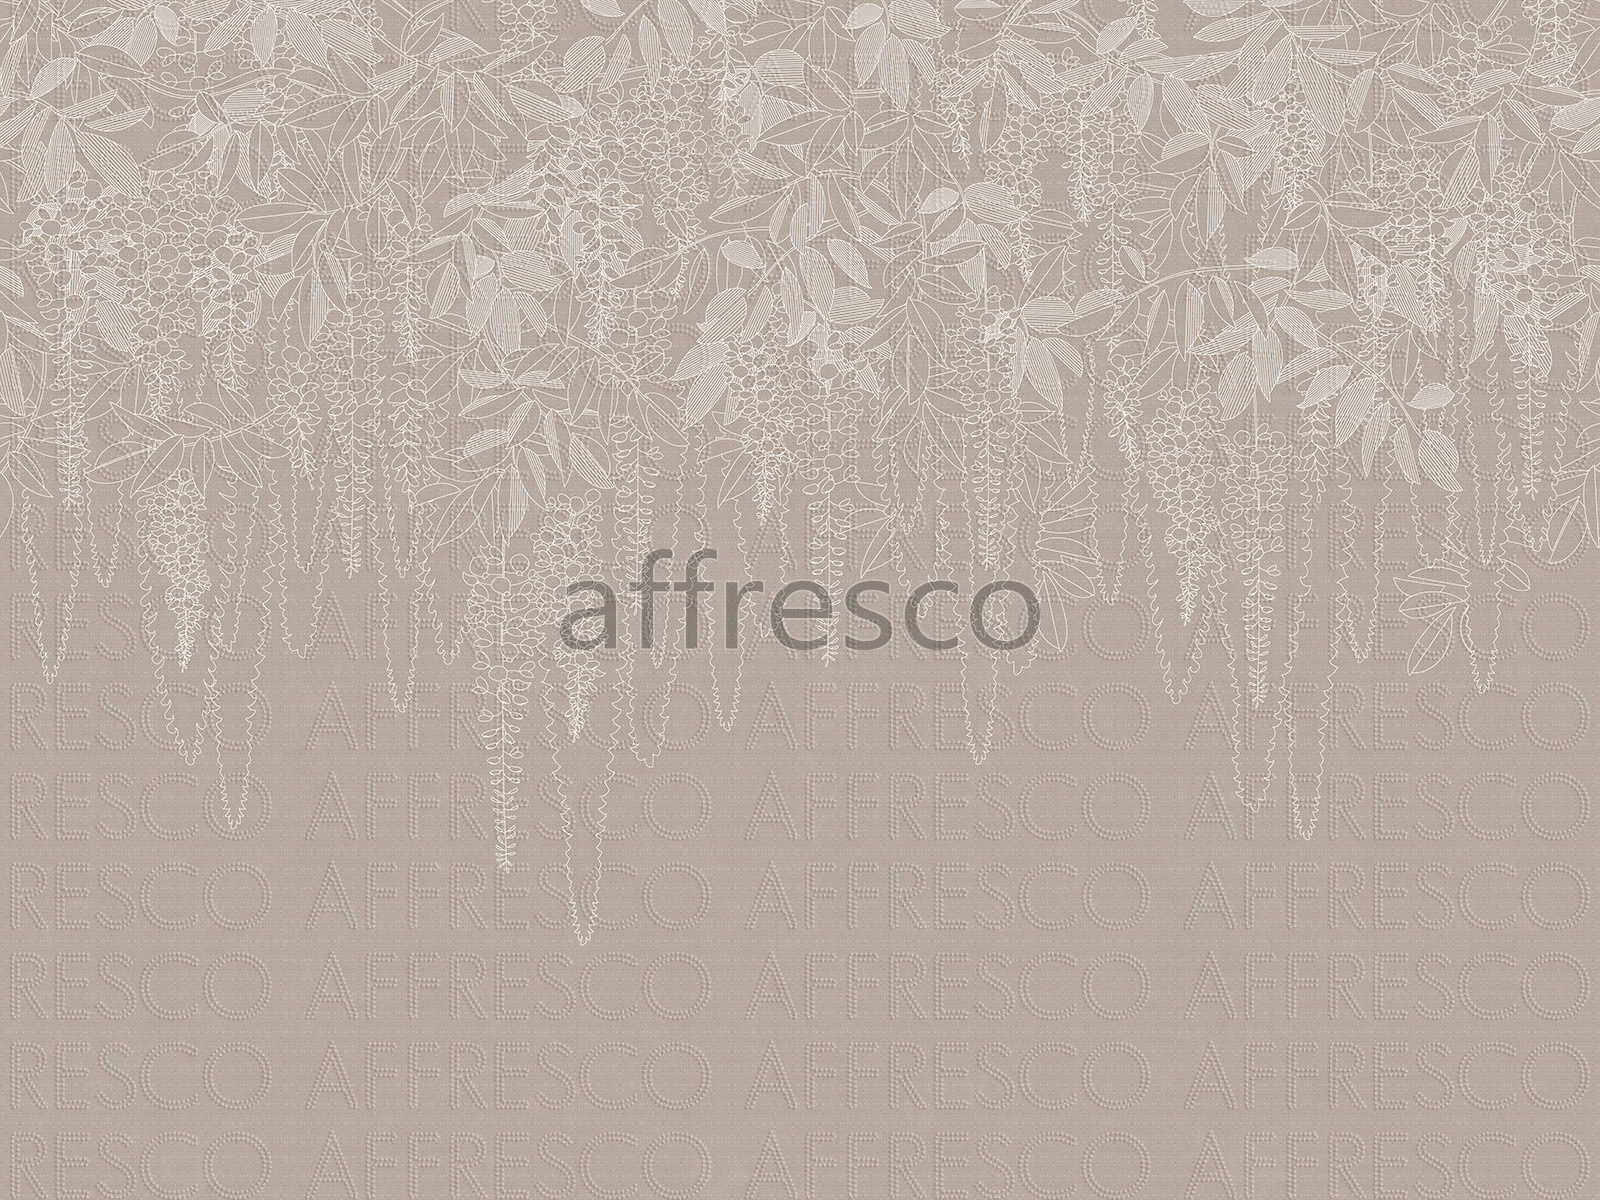 AF2147-COL1 | Line Art | Affresco Factory